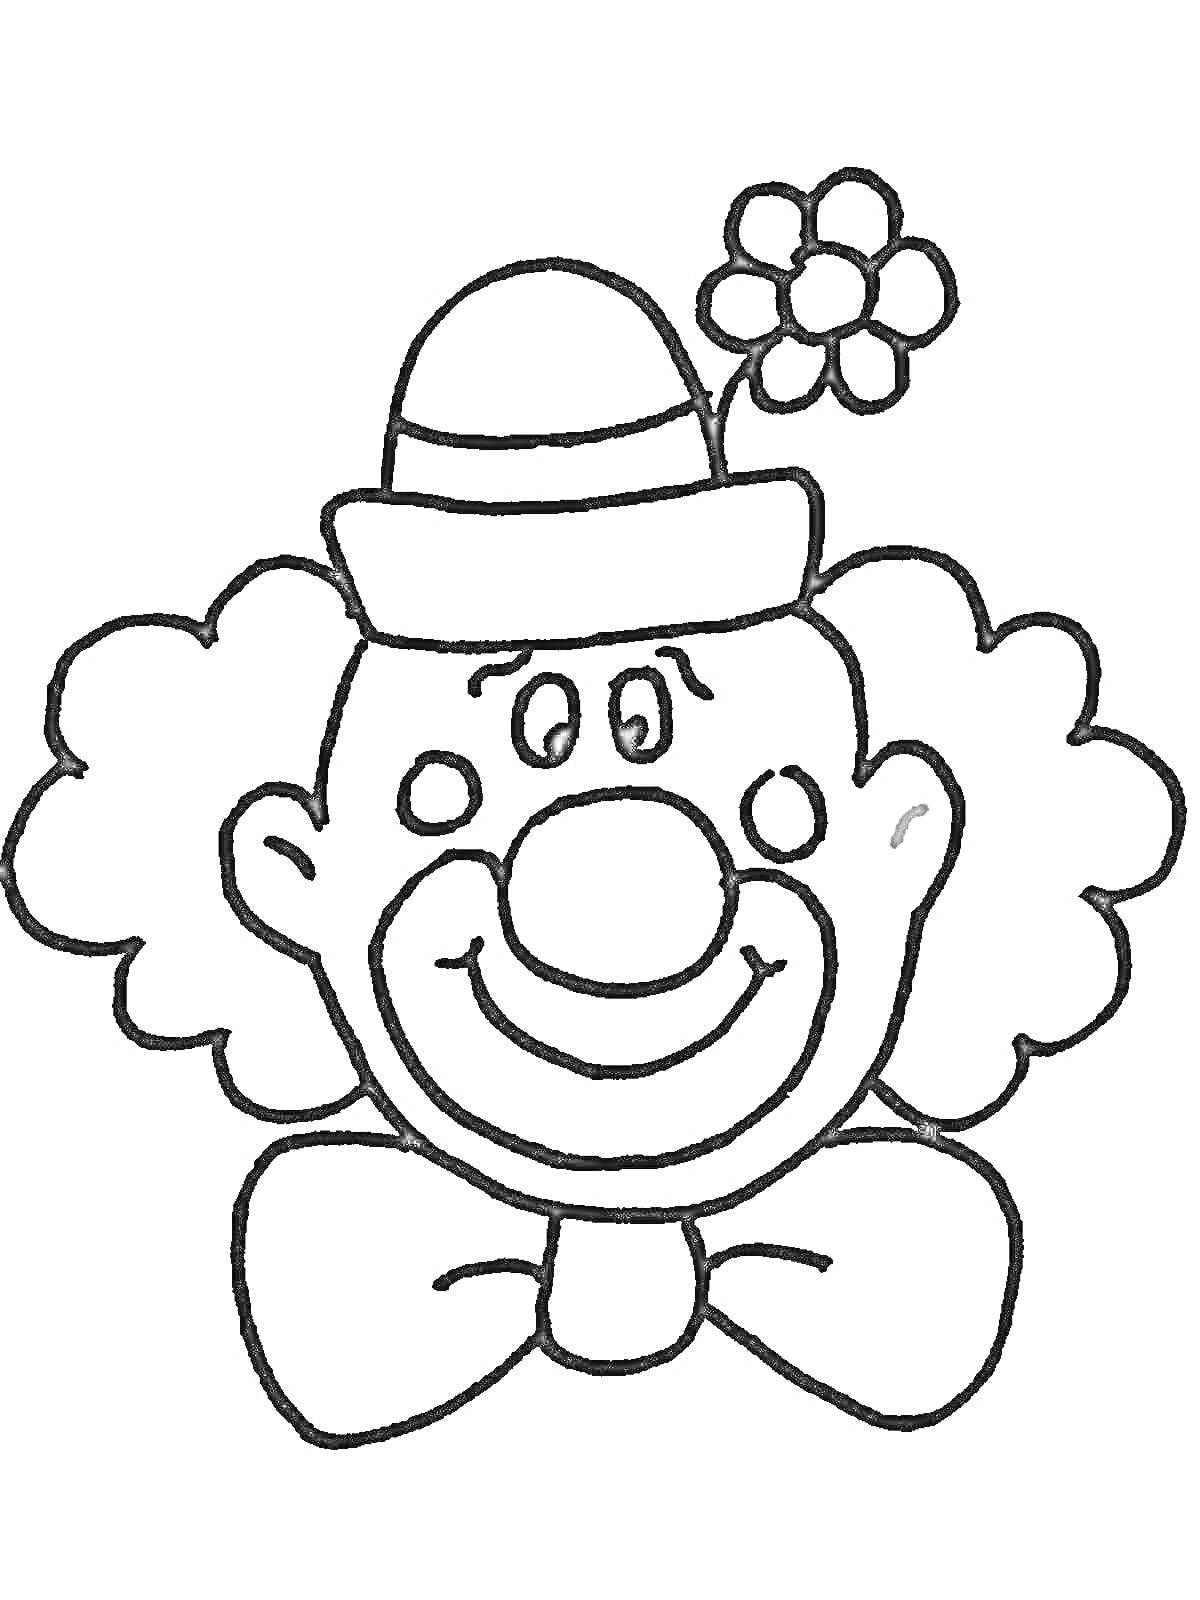 Раскраска Клоун в шляпе с цветком и галстуком-бабочкой.